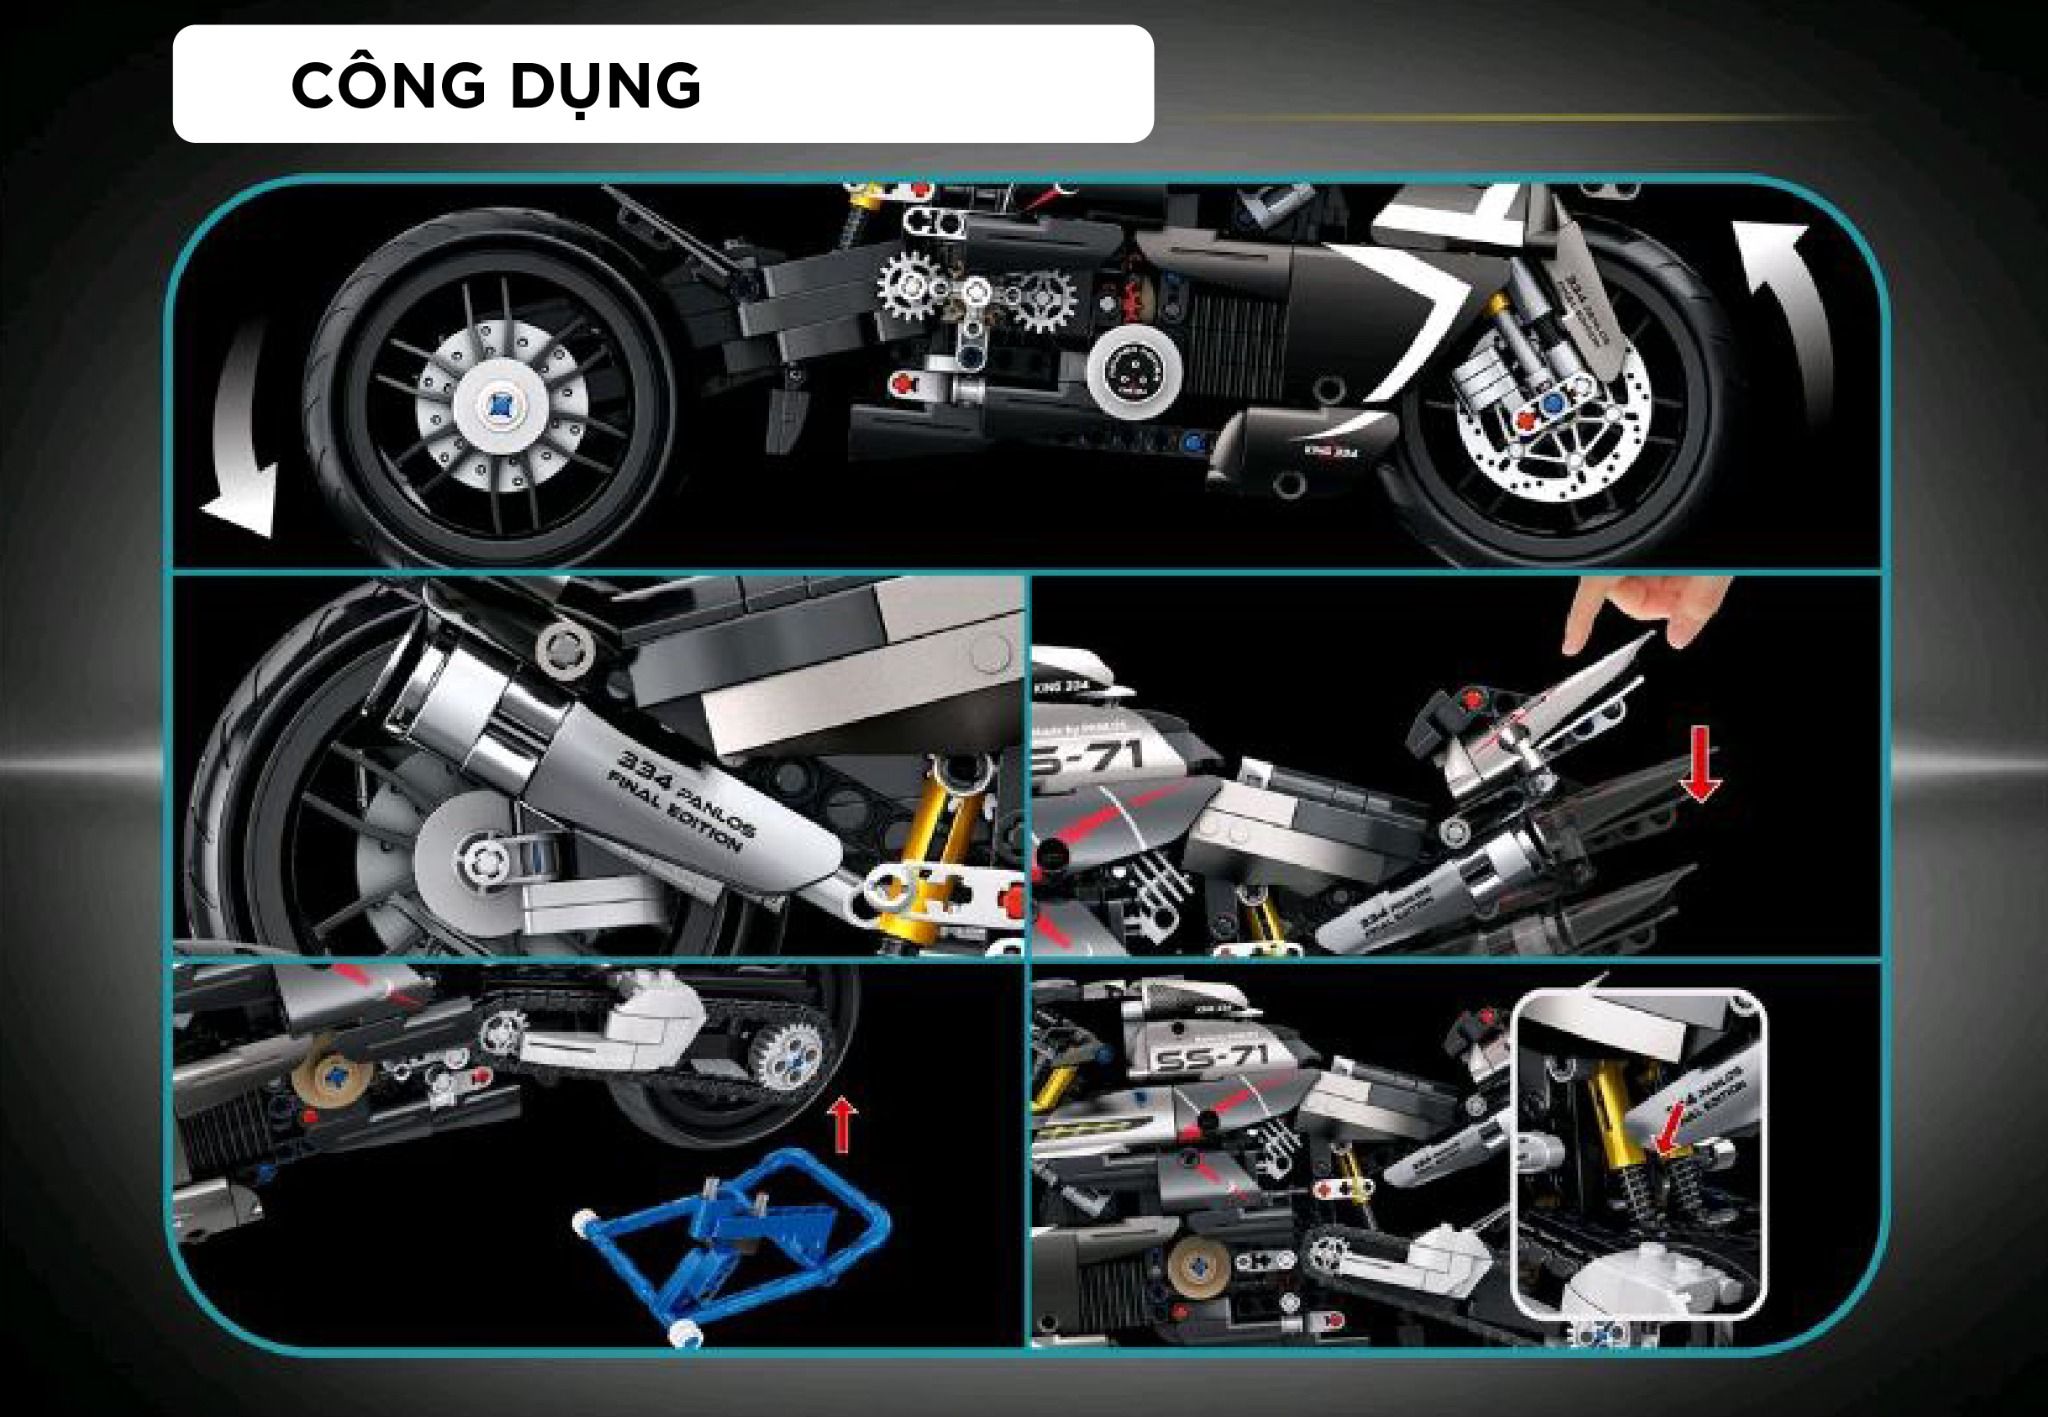  Mô hình xe mô tô lắp ghép Suzuki B King Technic 1056 pcs tỉ lệ 1:8 LG012 